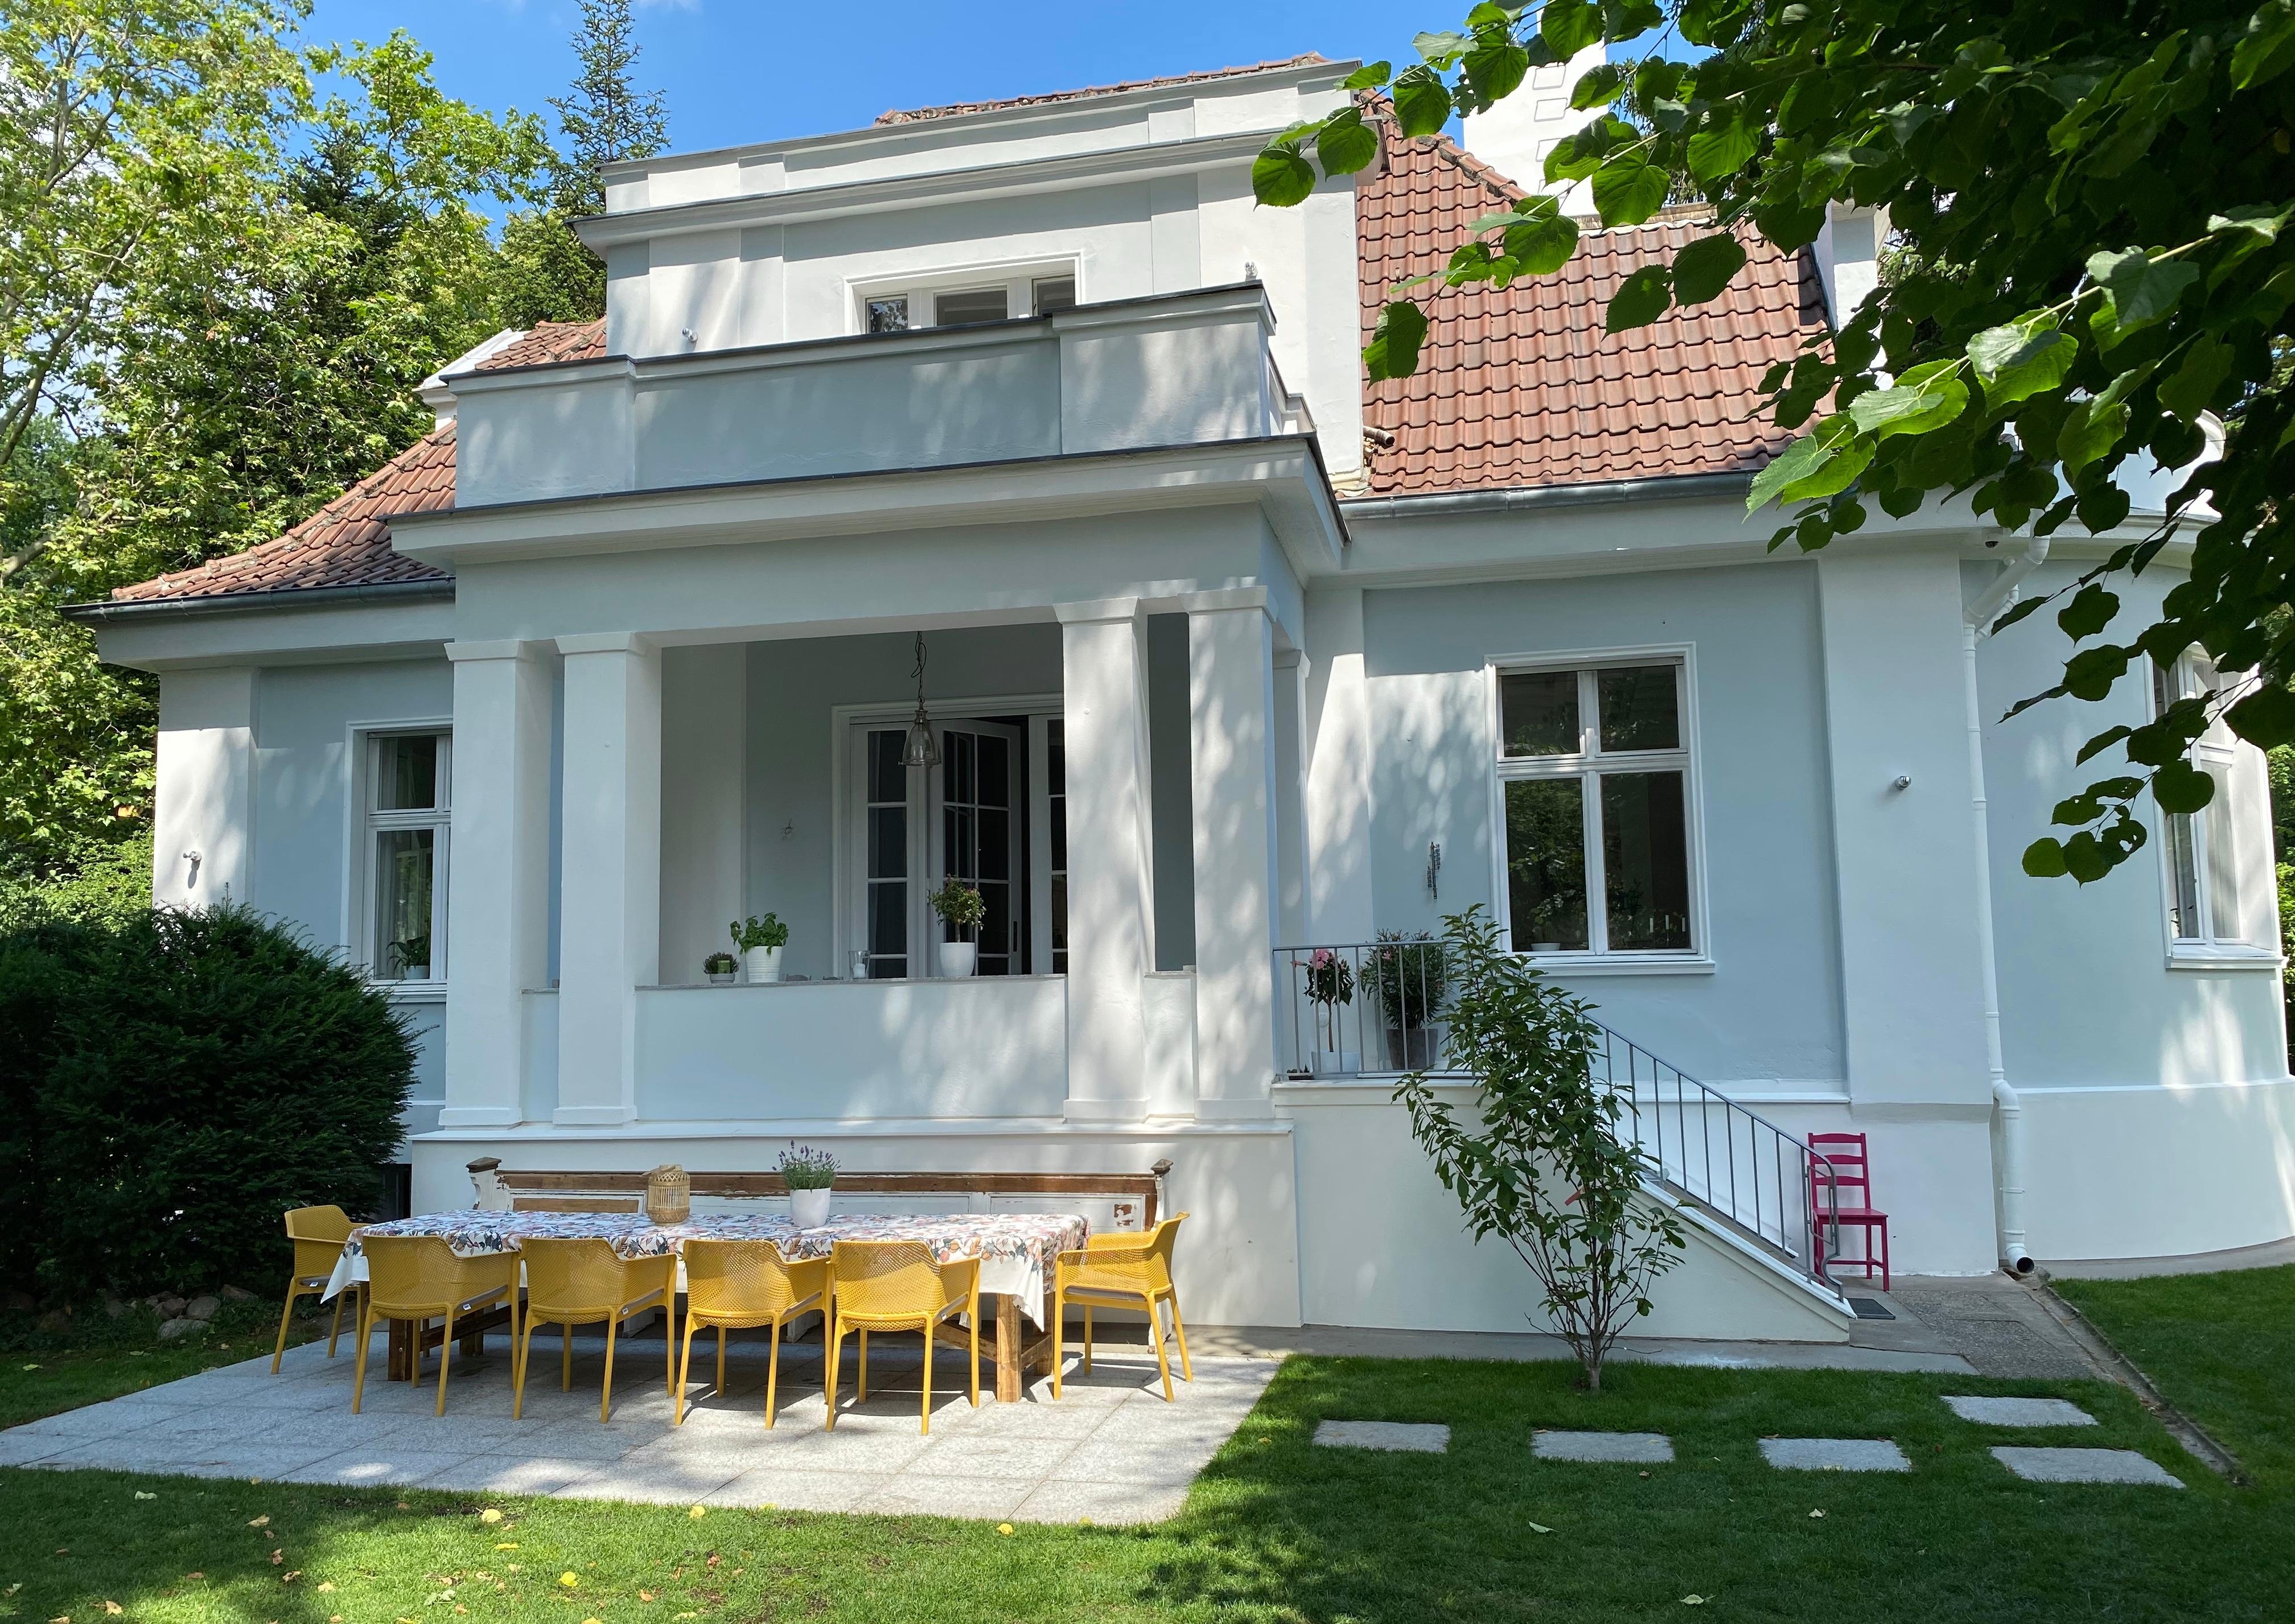 Bereit für den Urlaub zu Hause ☀️💕😊 #terrasse #altbauliebe #traumhaus